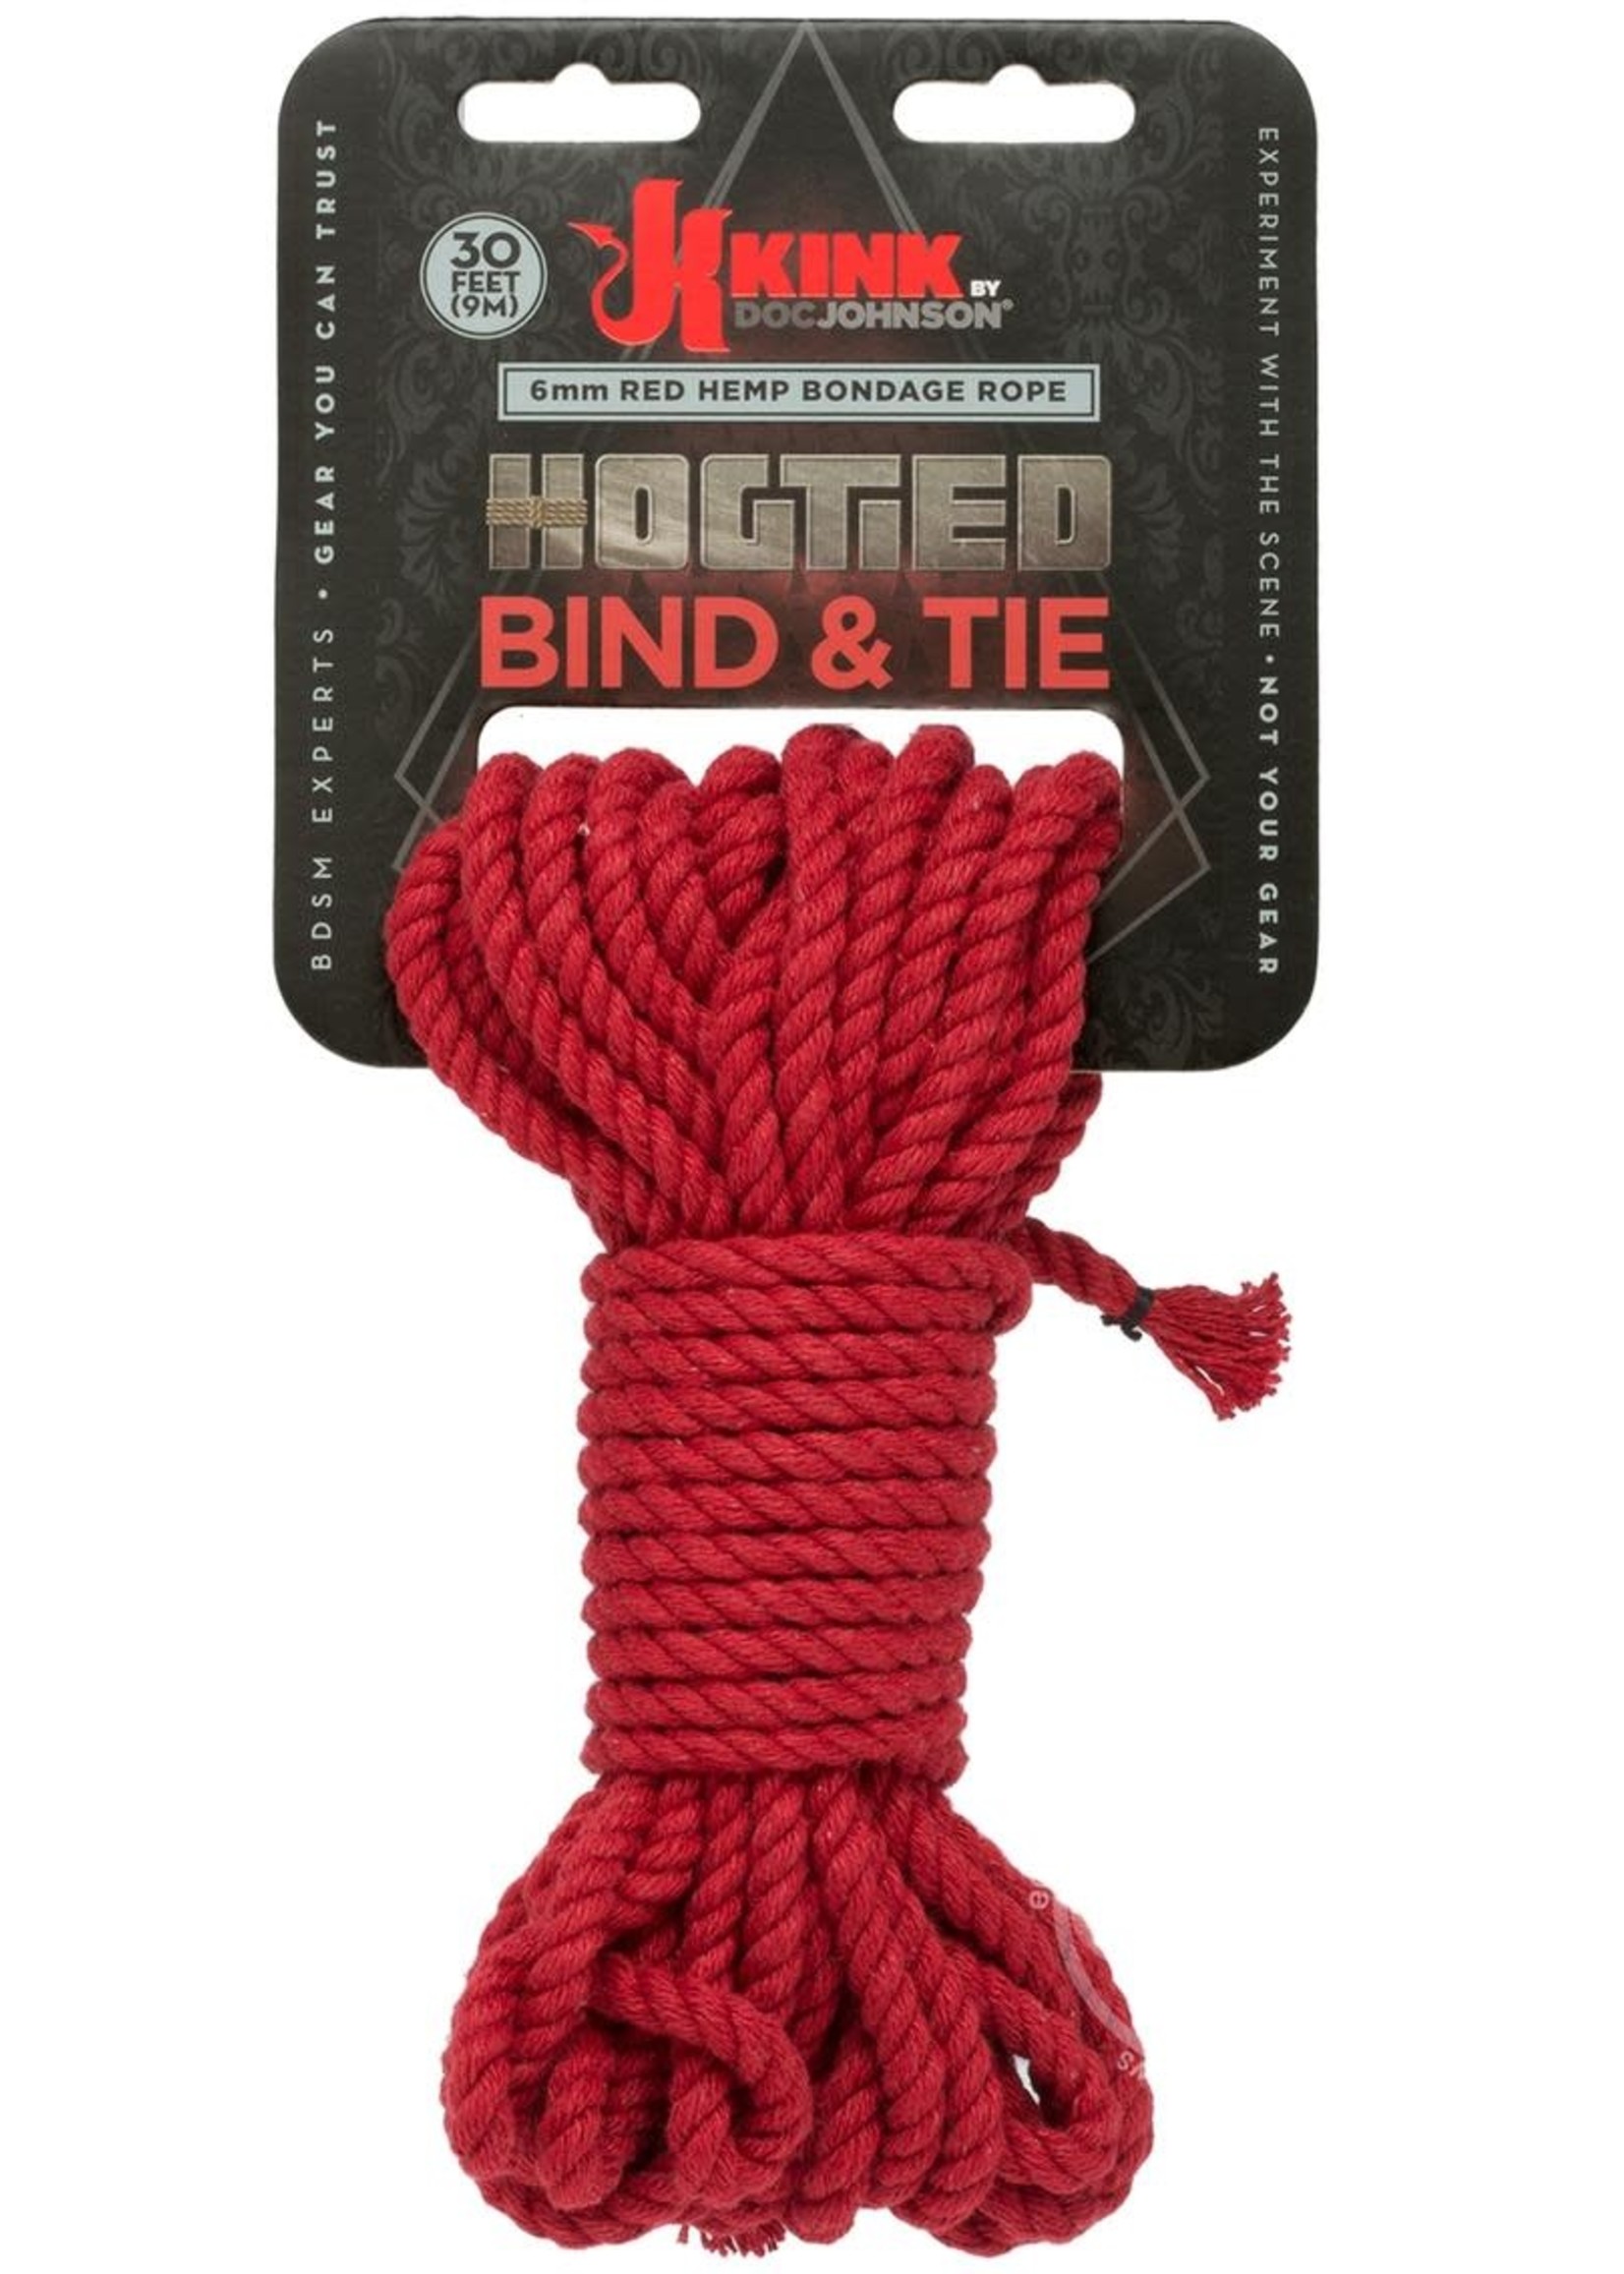 Kink Hogtied Bind & Tie 6mm Hemp Bondage Rope 30 Feet - Red